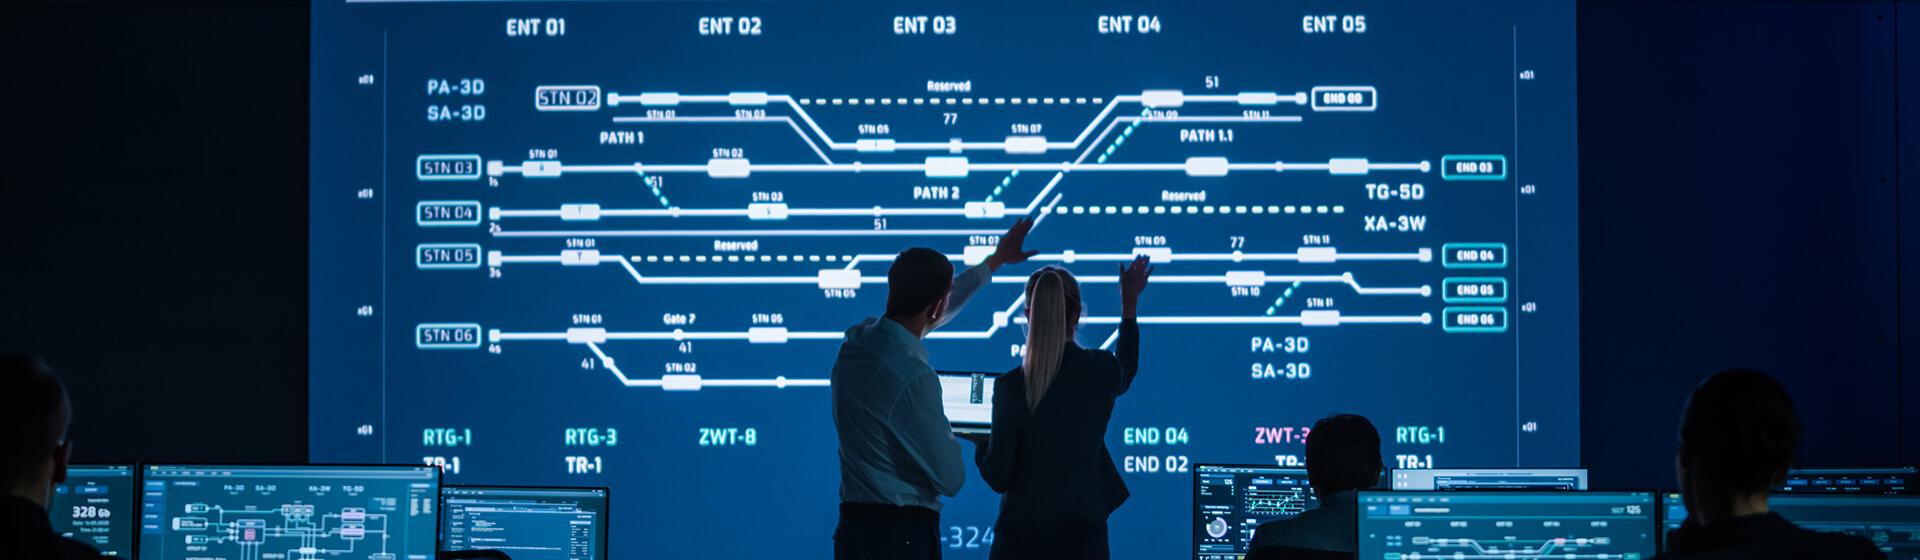 en profesjonell mann og kvinne i et kontrollrom med en stor skjerm som viser jernbanespor på en maritim shipping terminal.